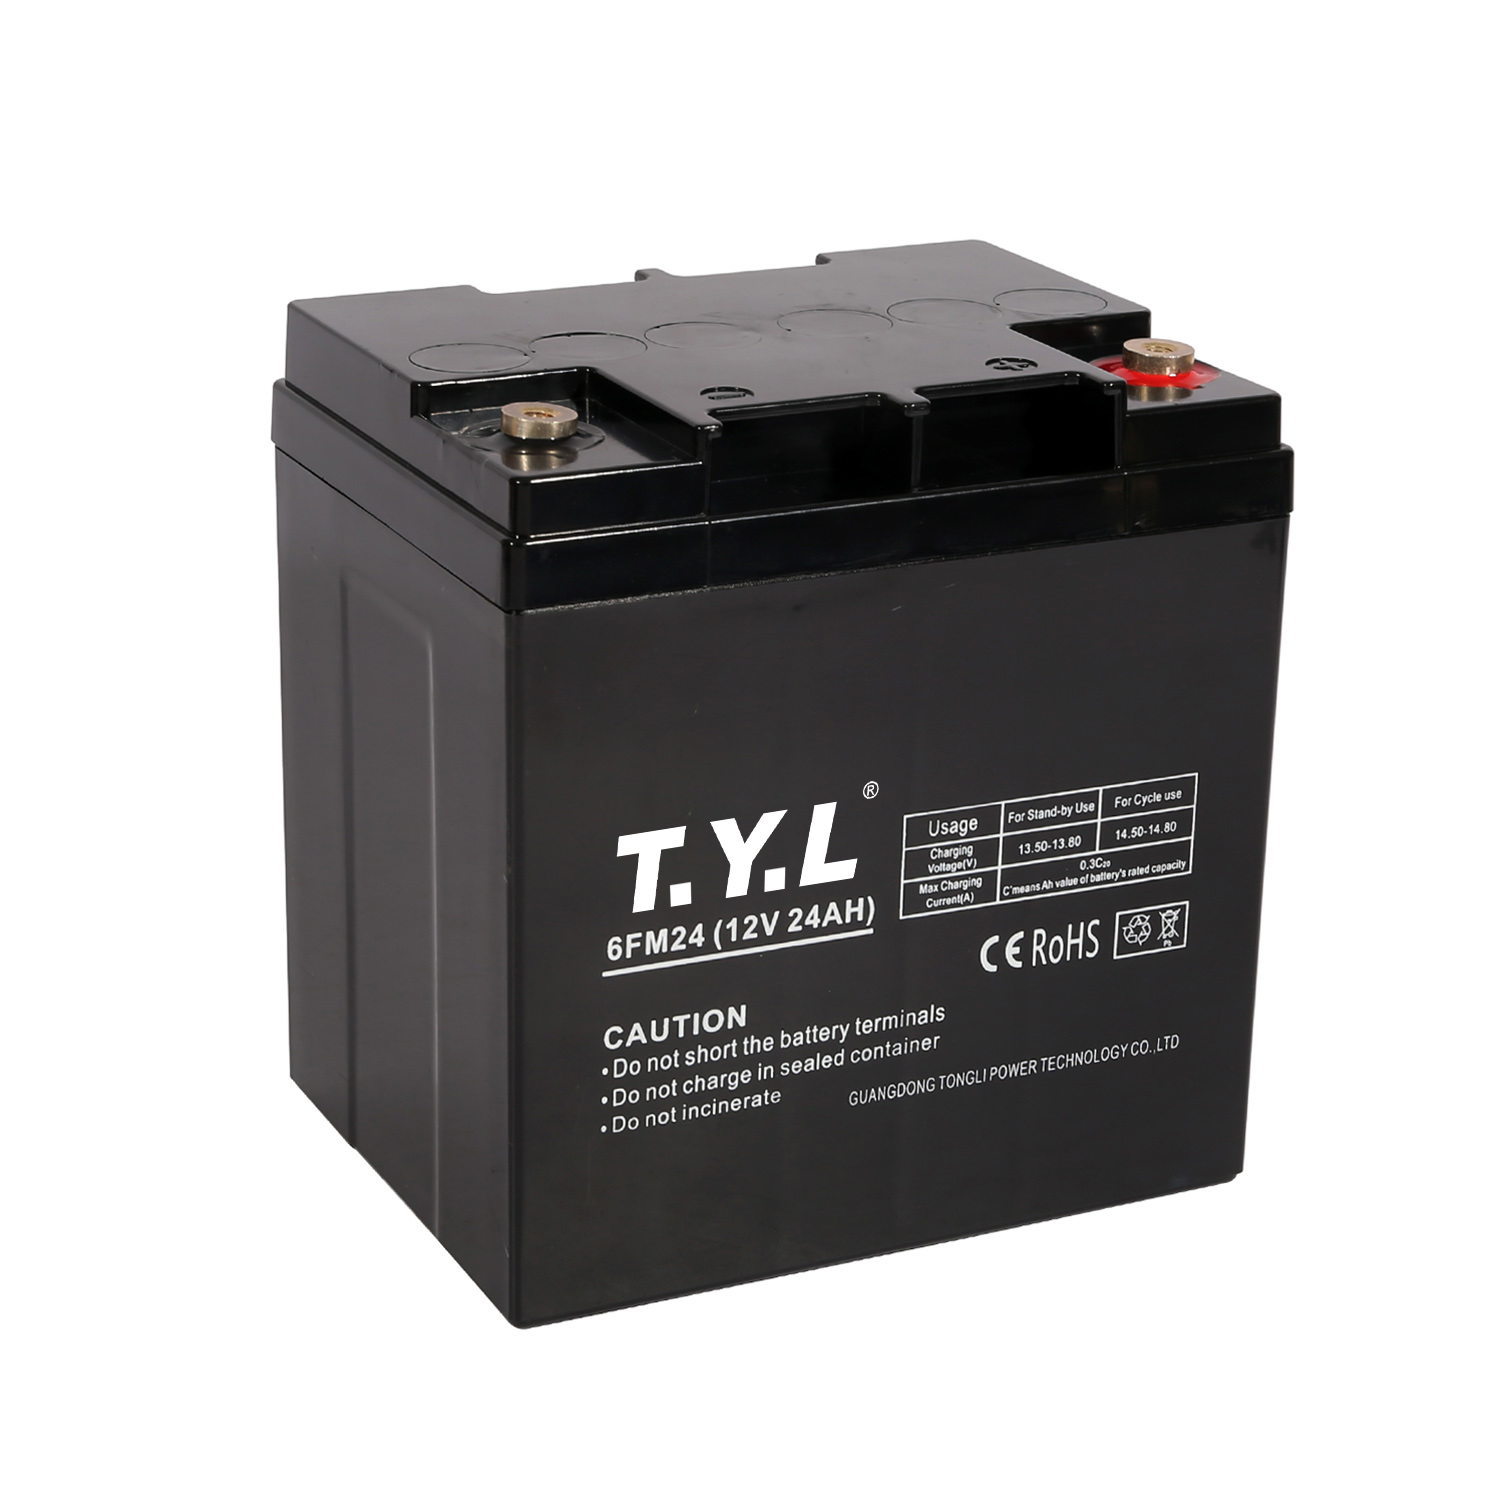 Batterie de stockage longue durée 12V26AH avec bornes pour les entreprises